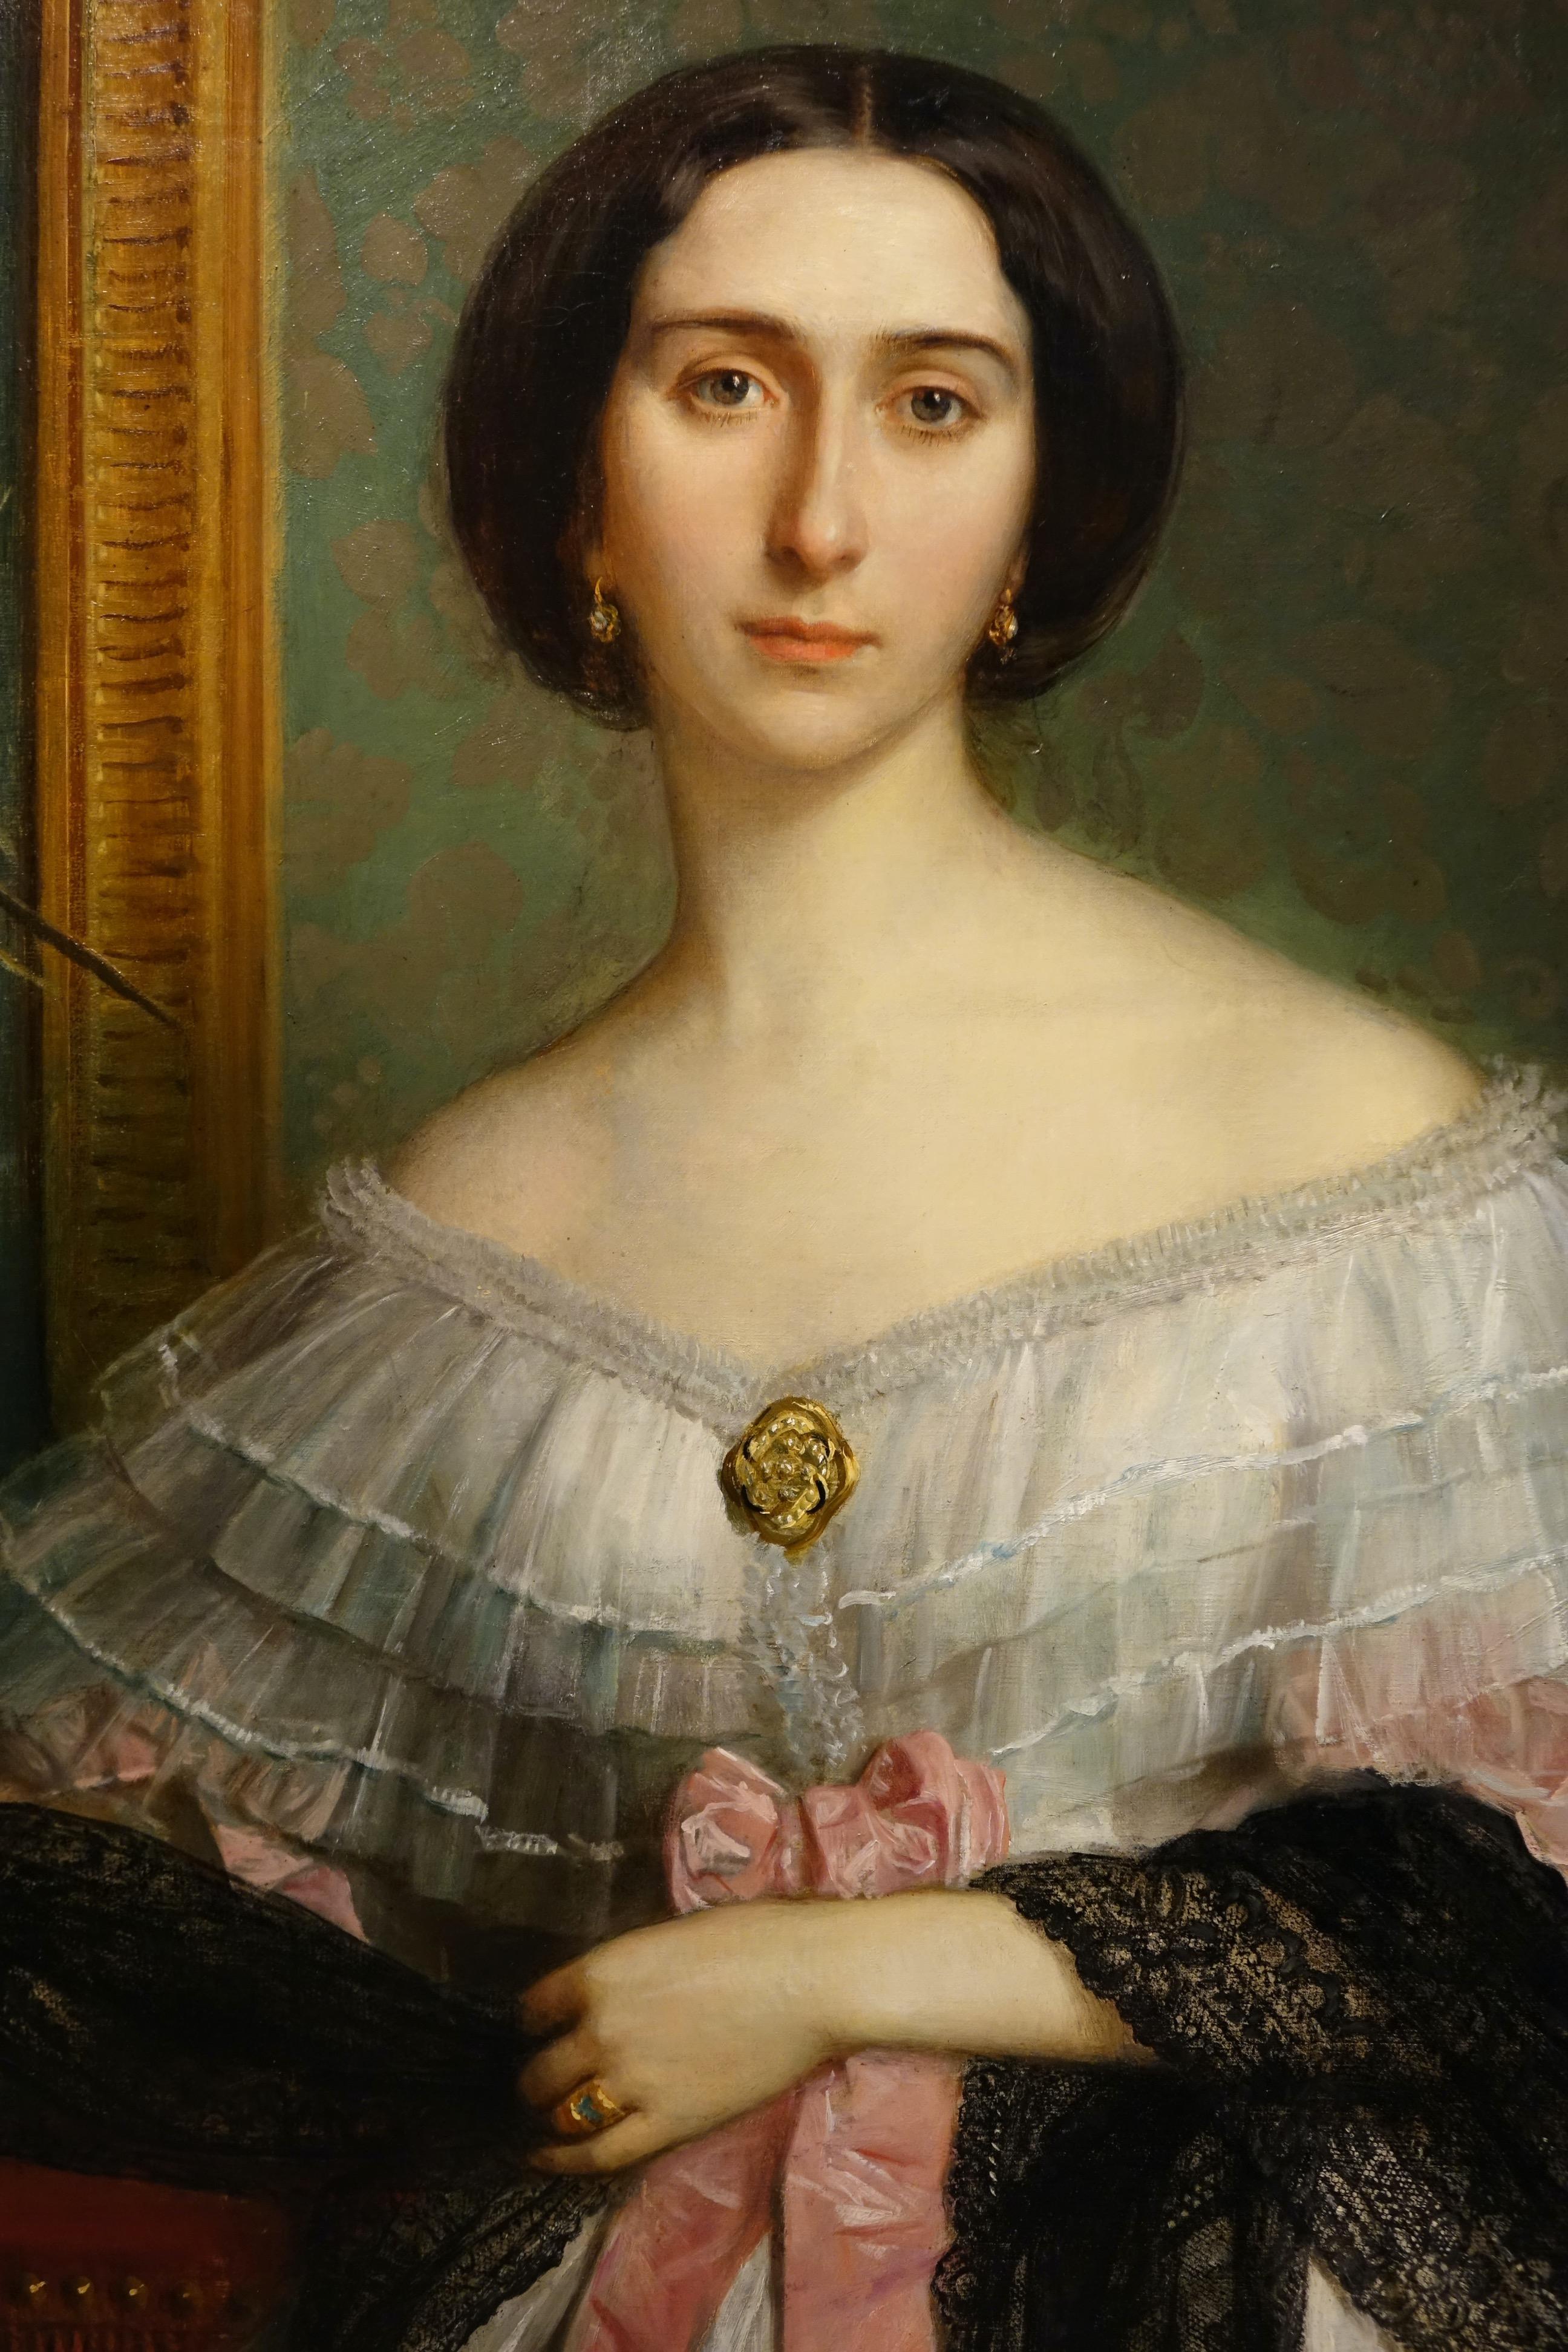 Grande huile sur toile représentant une jeune femme de caractère, sans doute une aristocrate, école française vers 1850.
Selon la tradition familiale, il s'agit du portrait de la comtesse Hallez Claparede, dame d'honneur de l'impératrice Eugénie